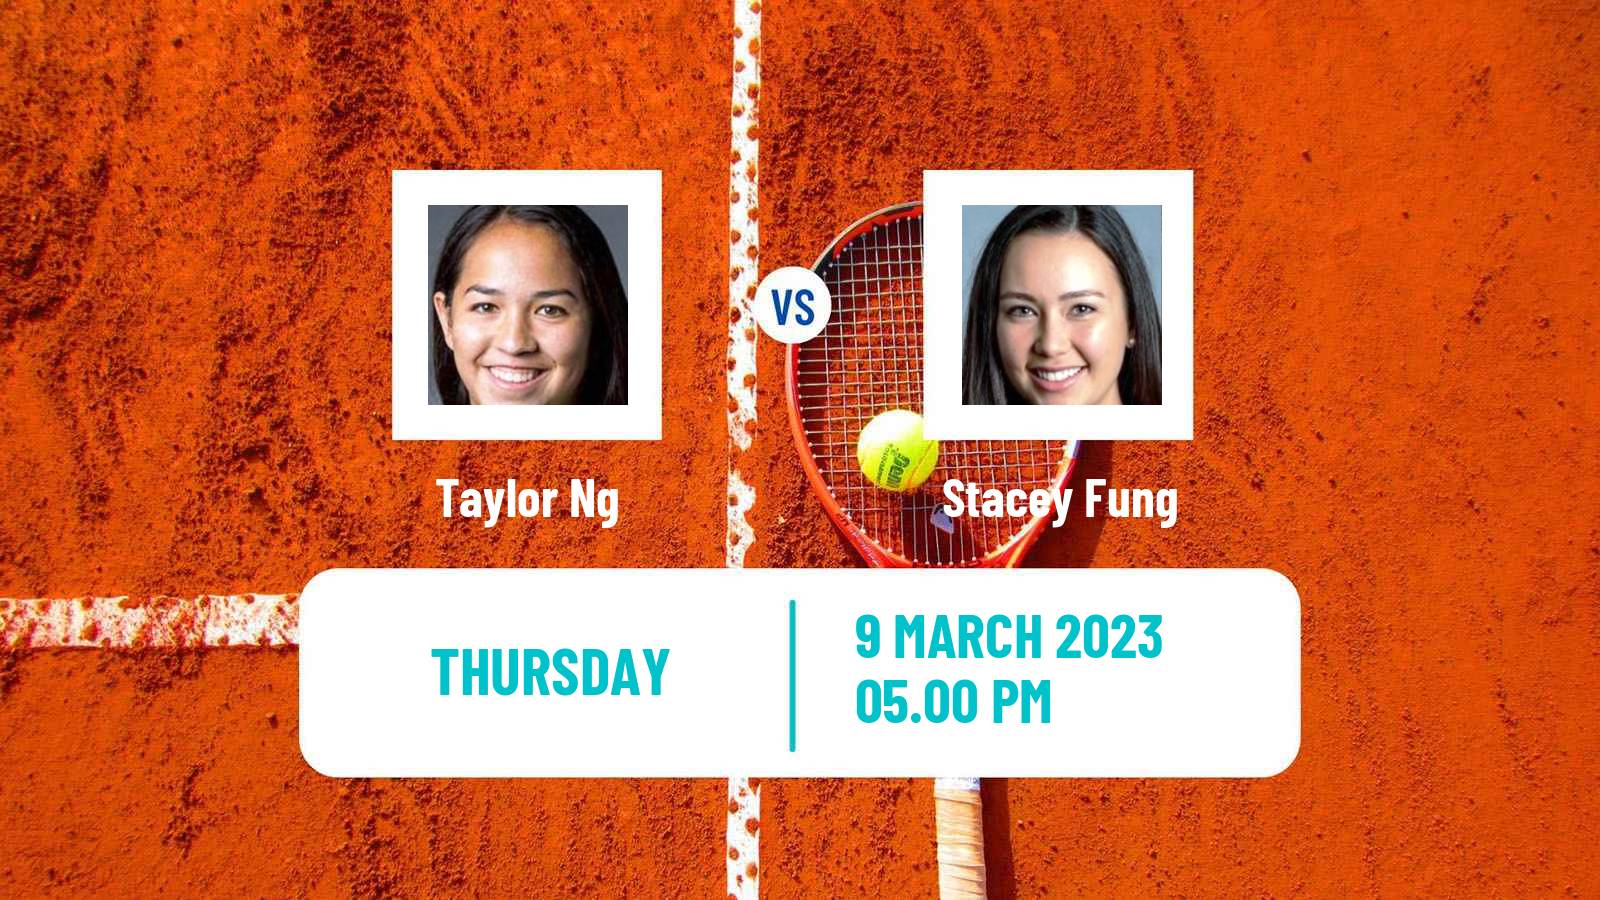 Tennis ITF Tournaments Taylor Ng - Stacey Fung